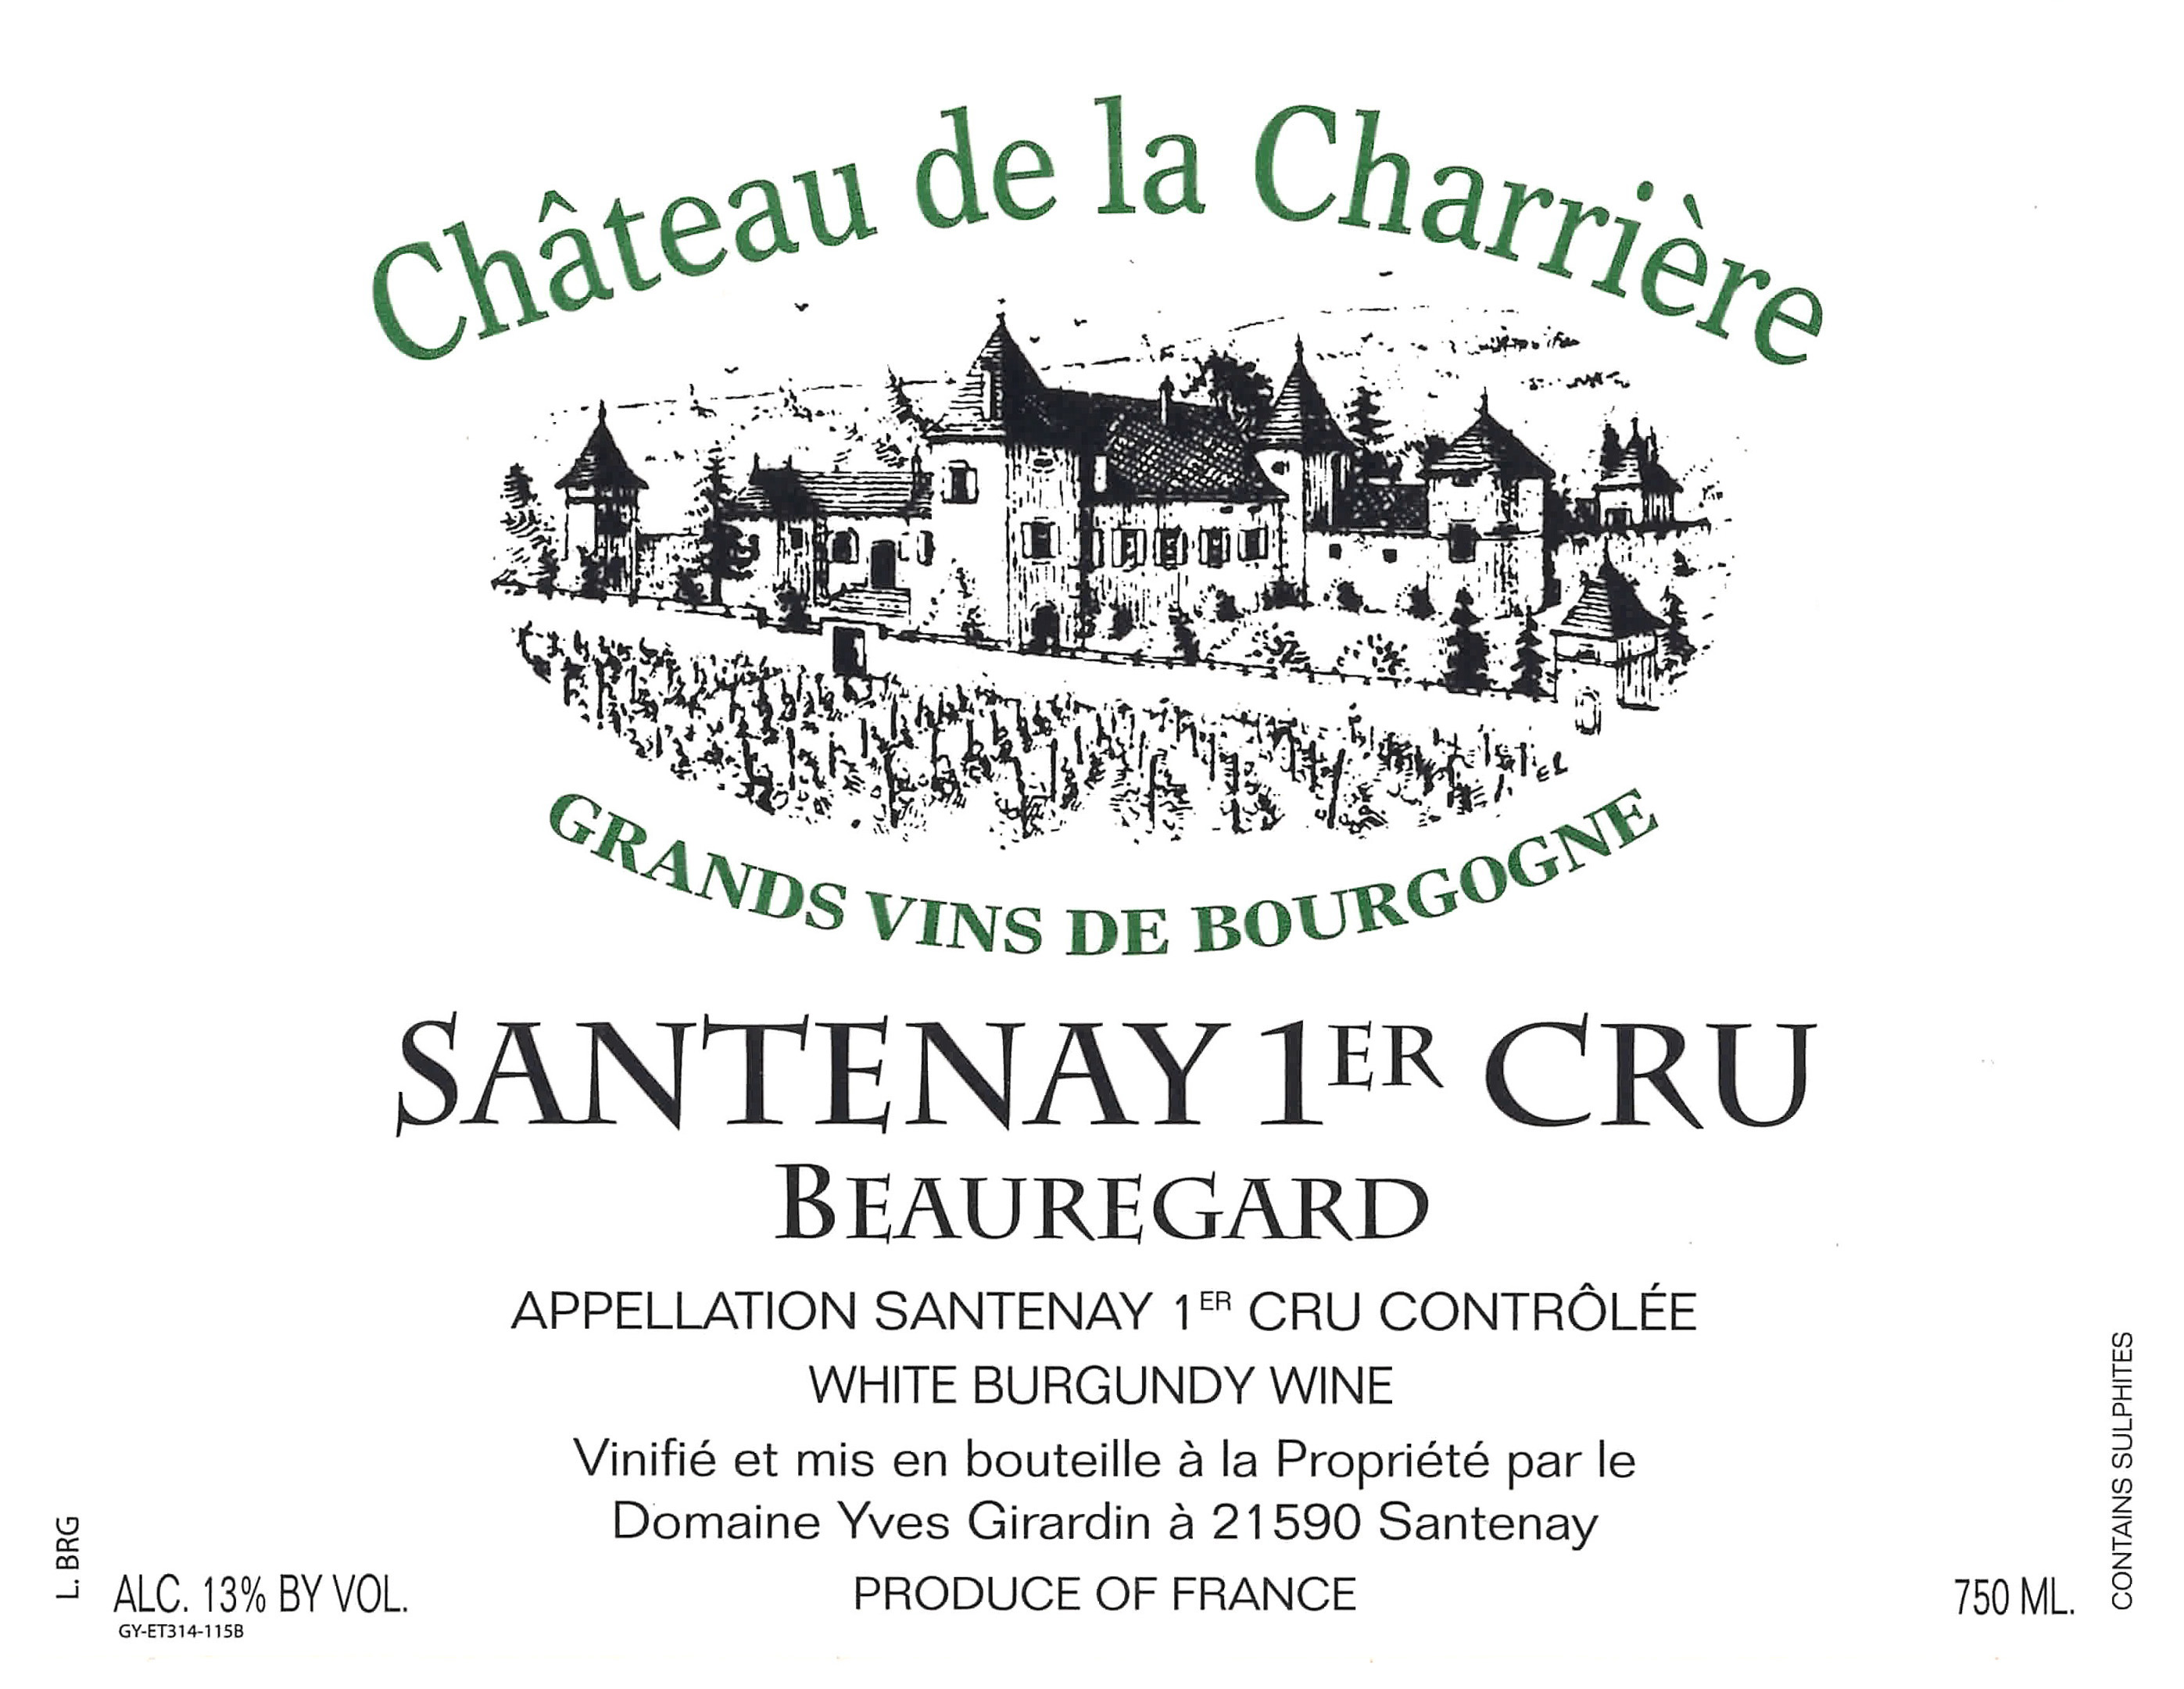 Chateau de la Charriere - Beauregard label